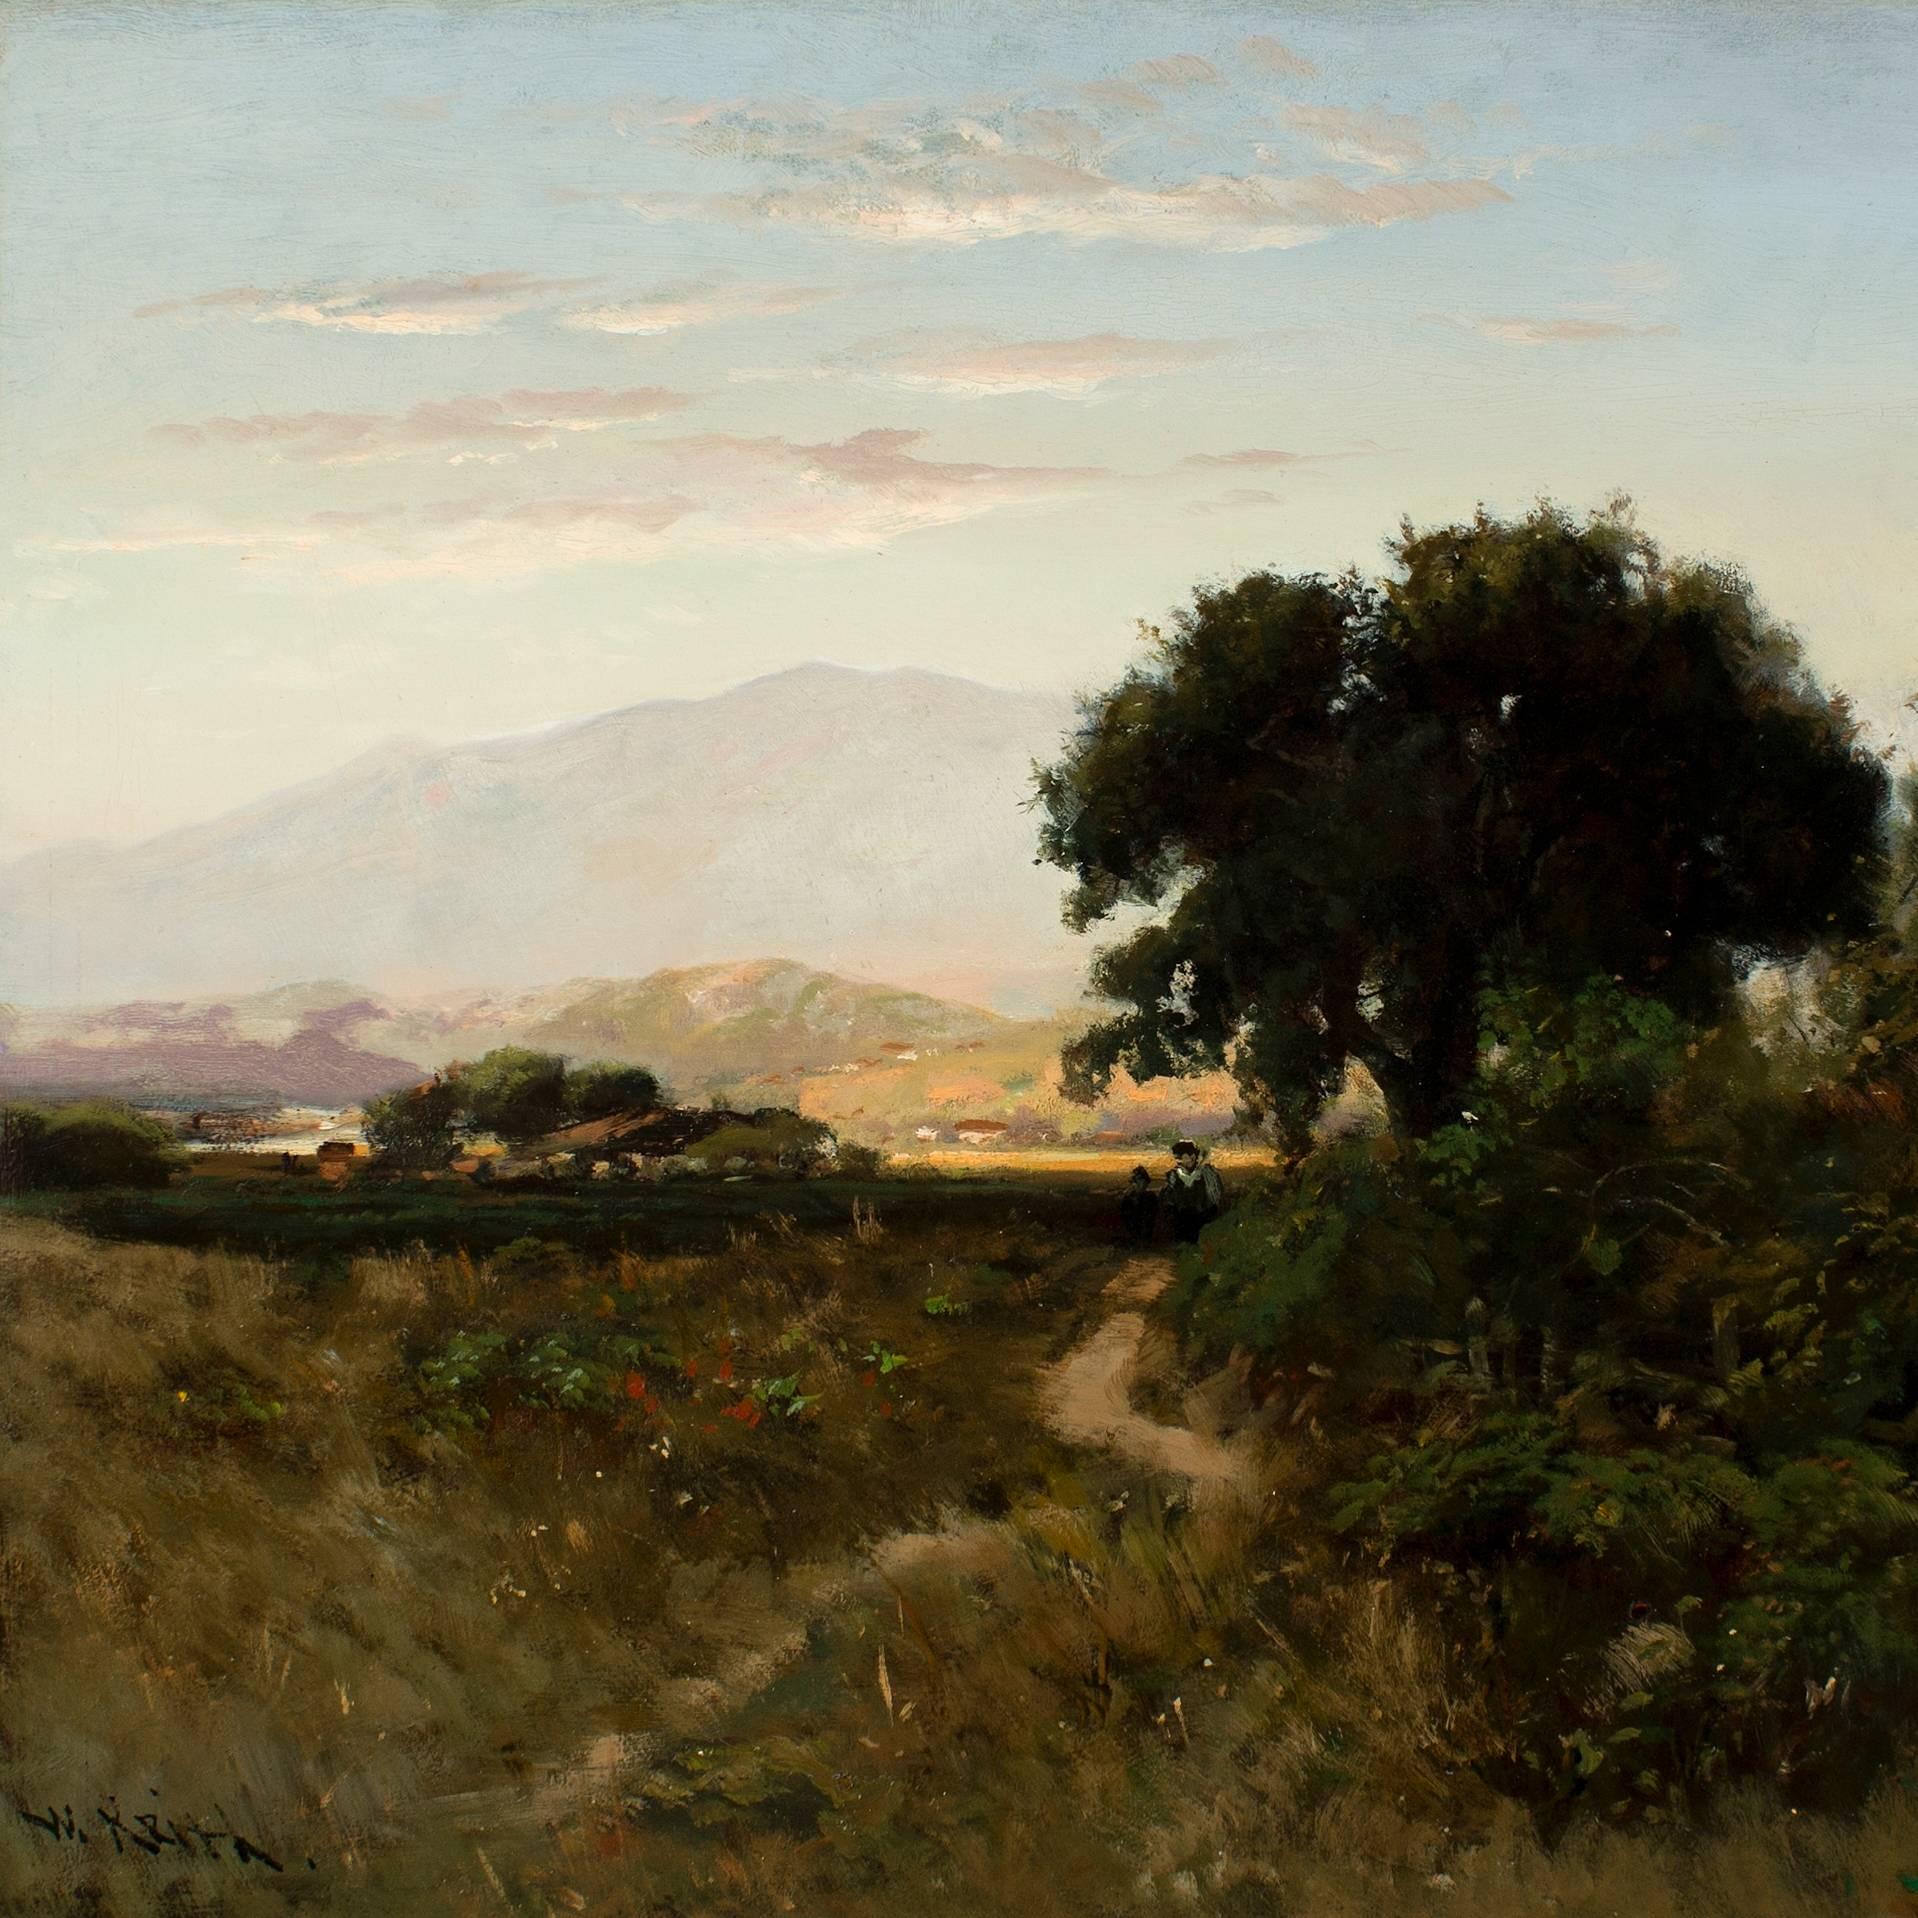 Landscape Painting William Keith - Mount Tamalpais, comté de Marin, Californie,